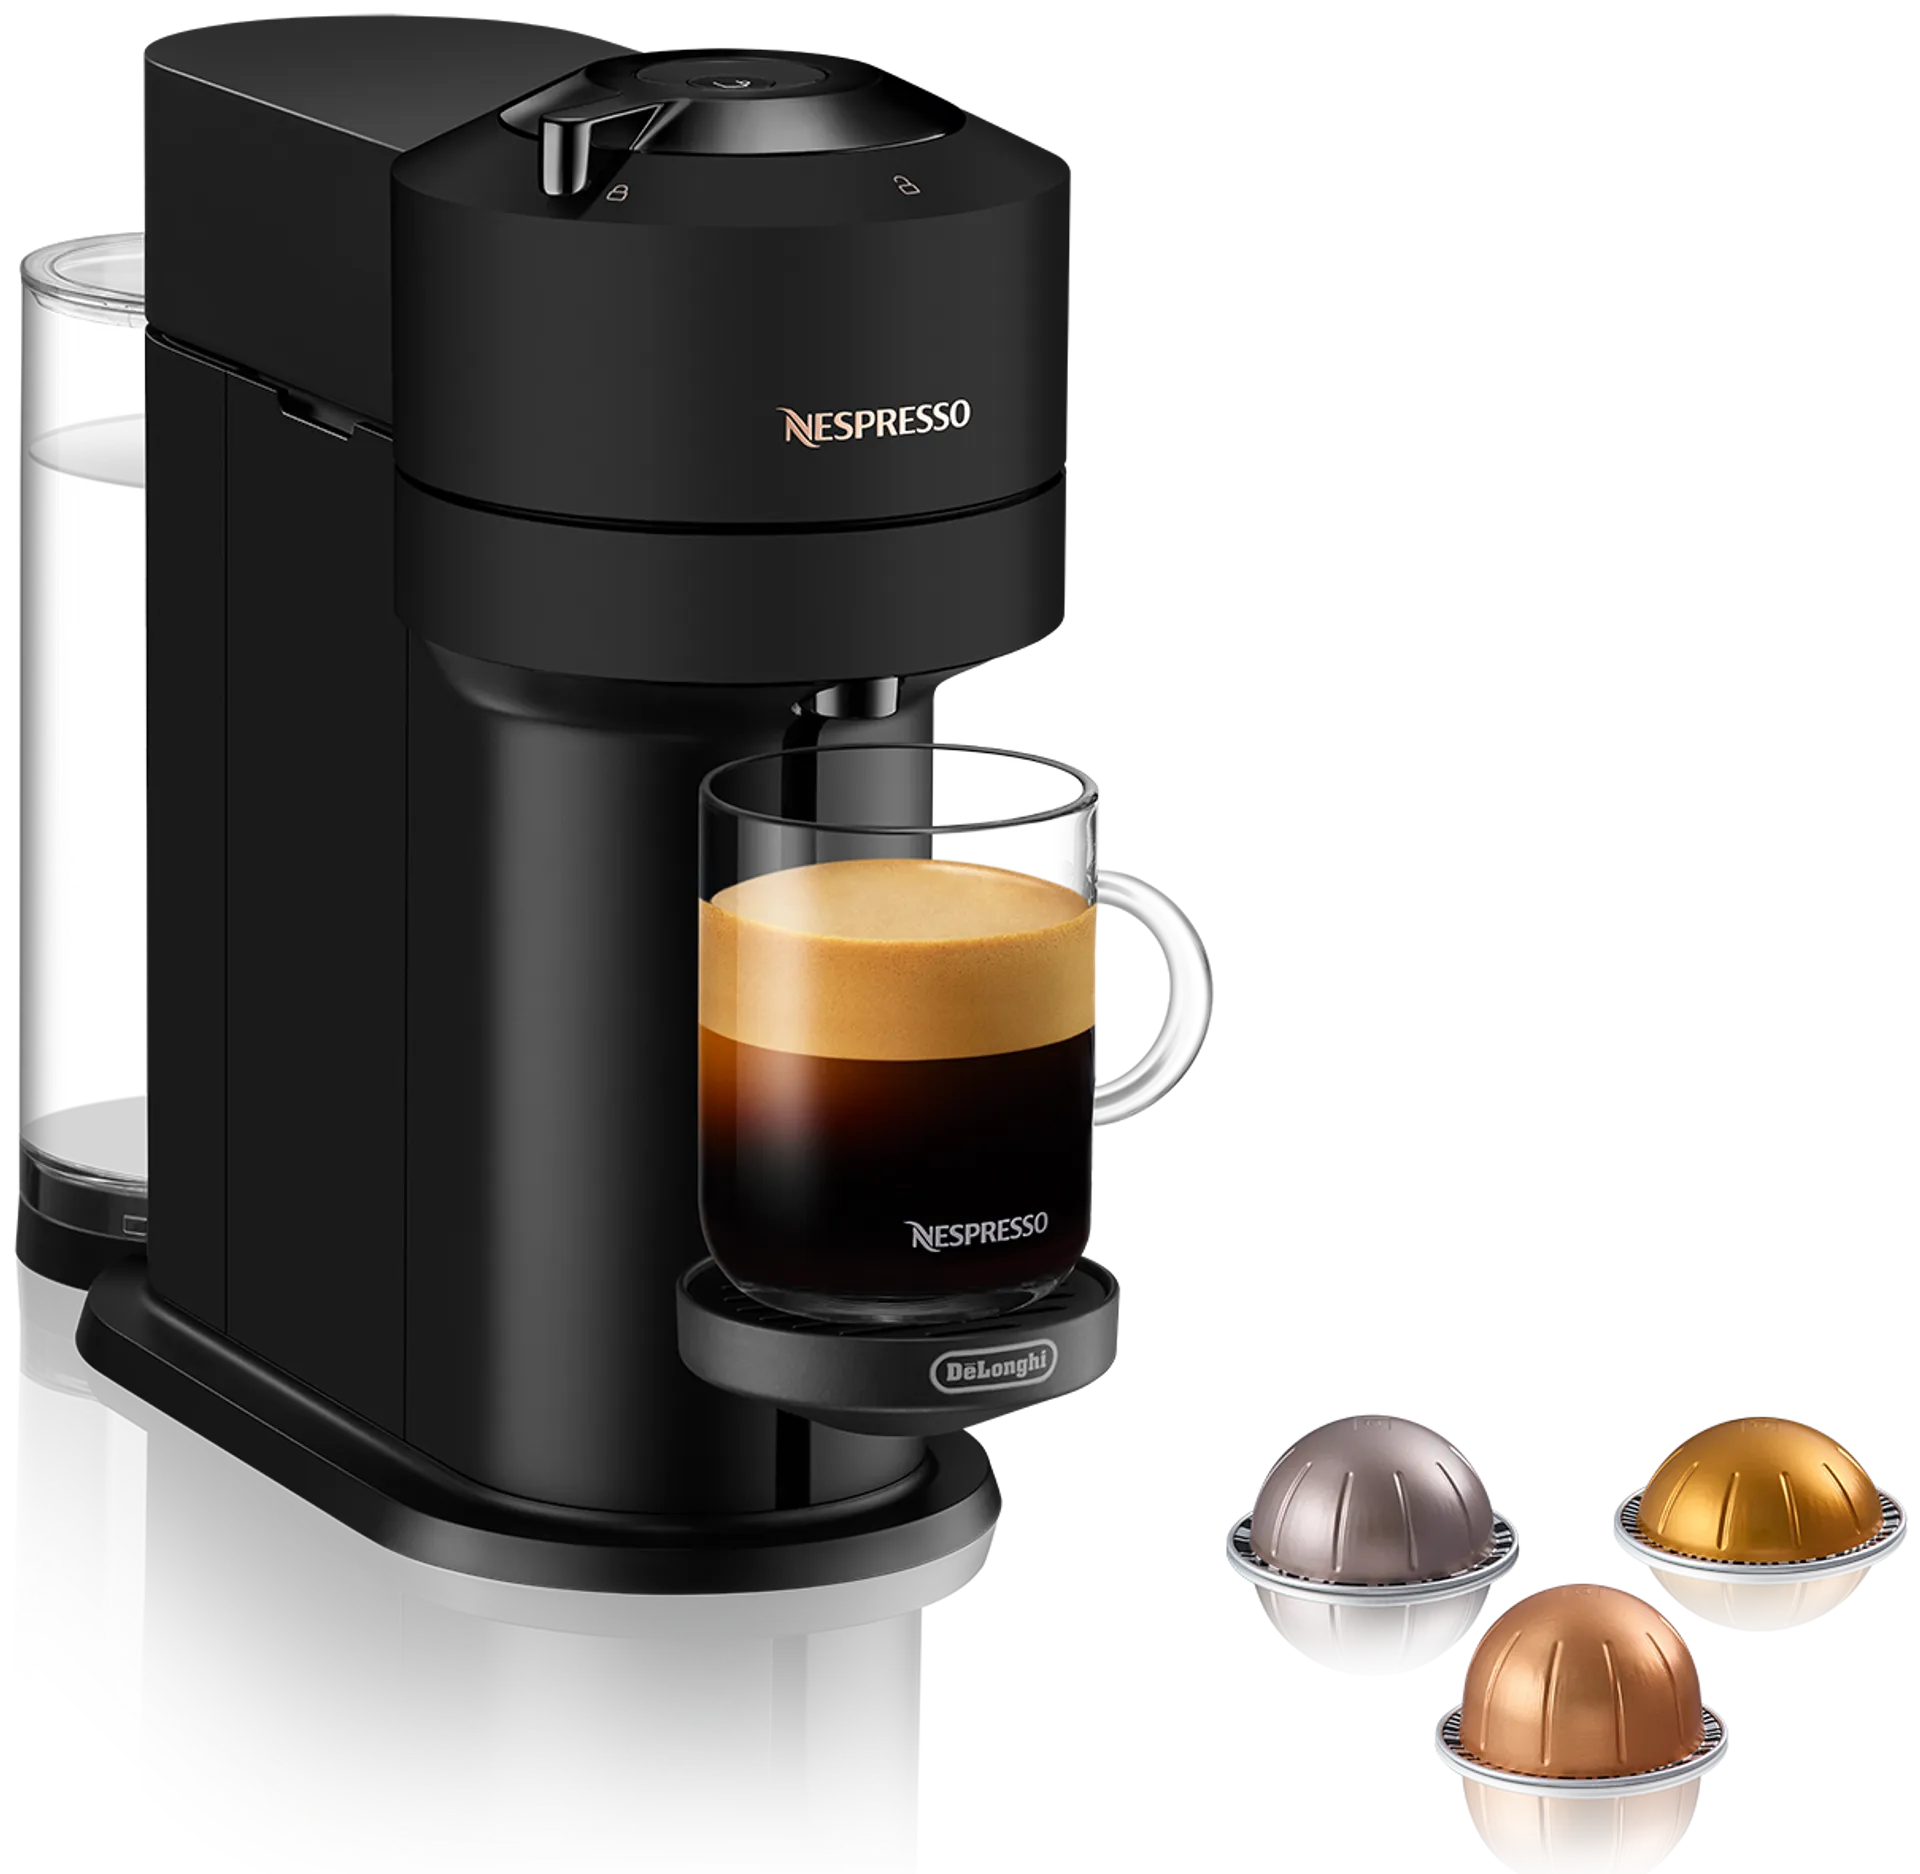 De'Longhi ENV120.BM Nespresso Vertuo Next kahvikone - 1